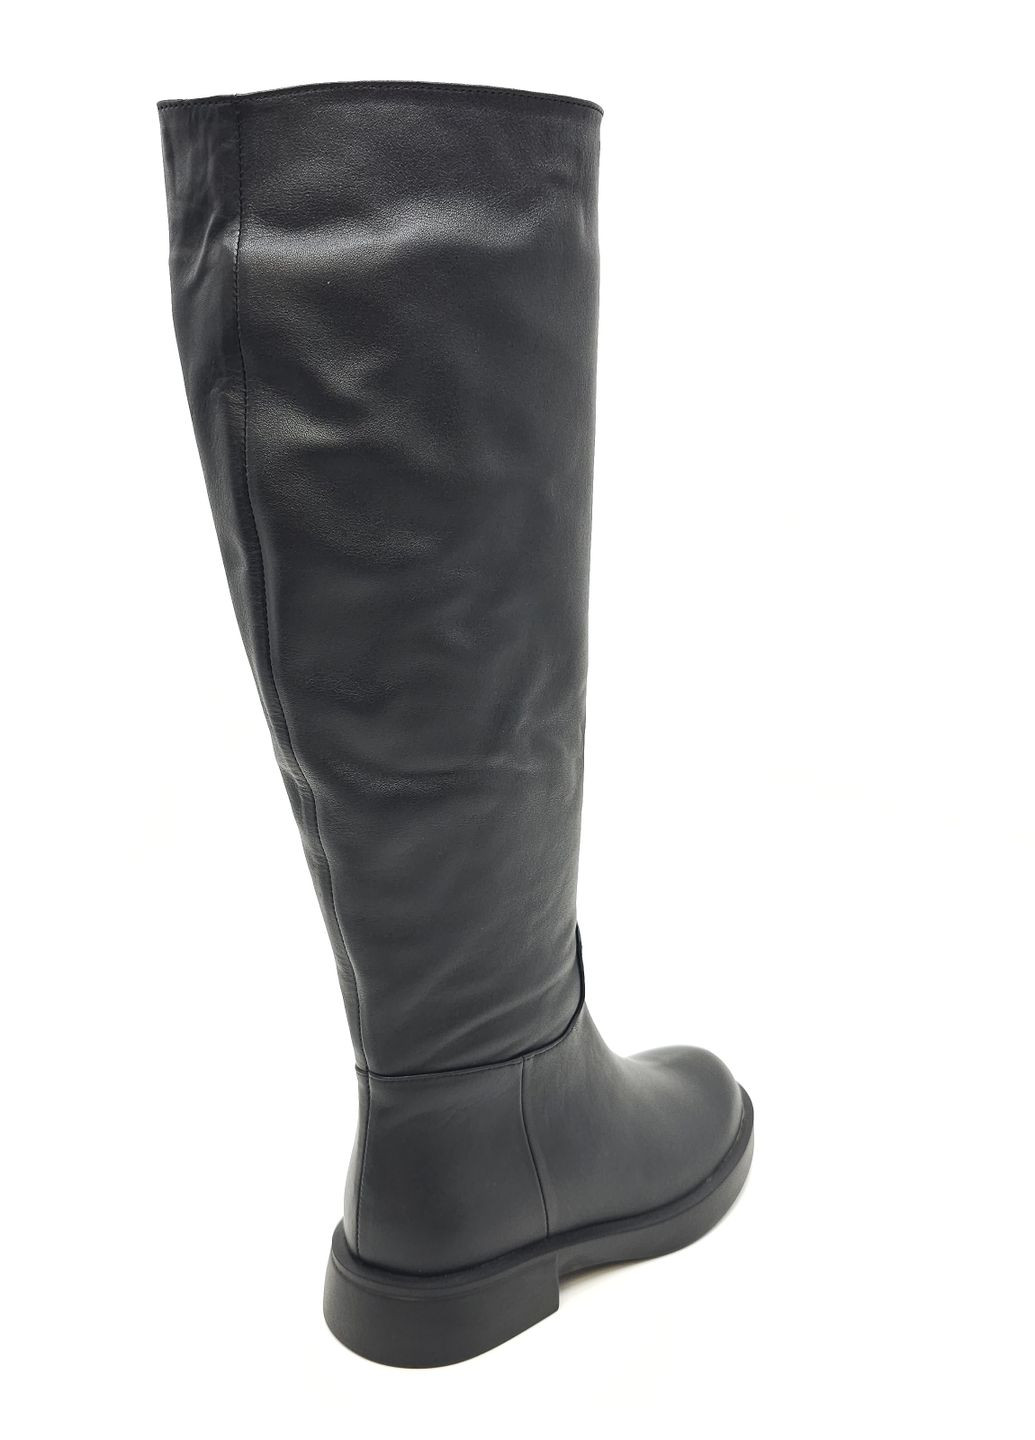 Жіночі чоботи єврозима чорні шкіряні MR-19-1 25,5 см (р) Morento (260379977)